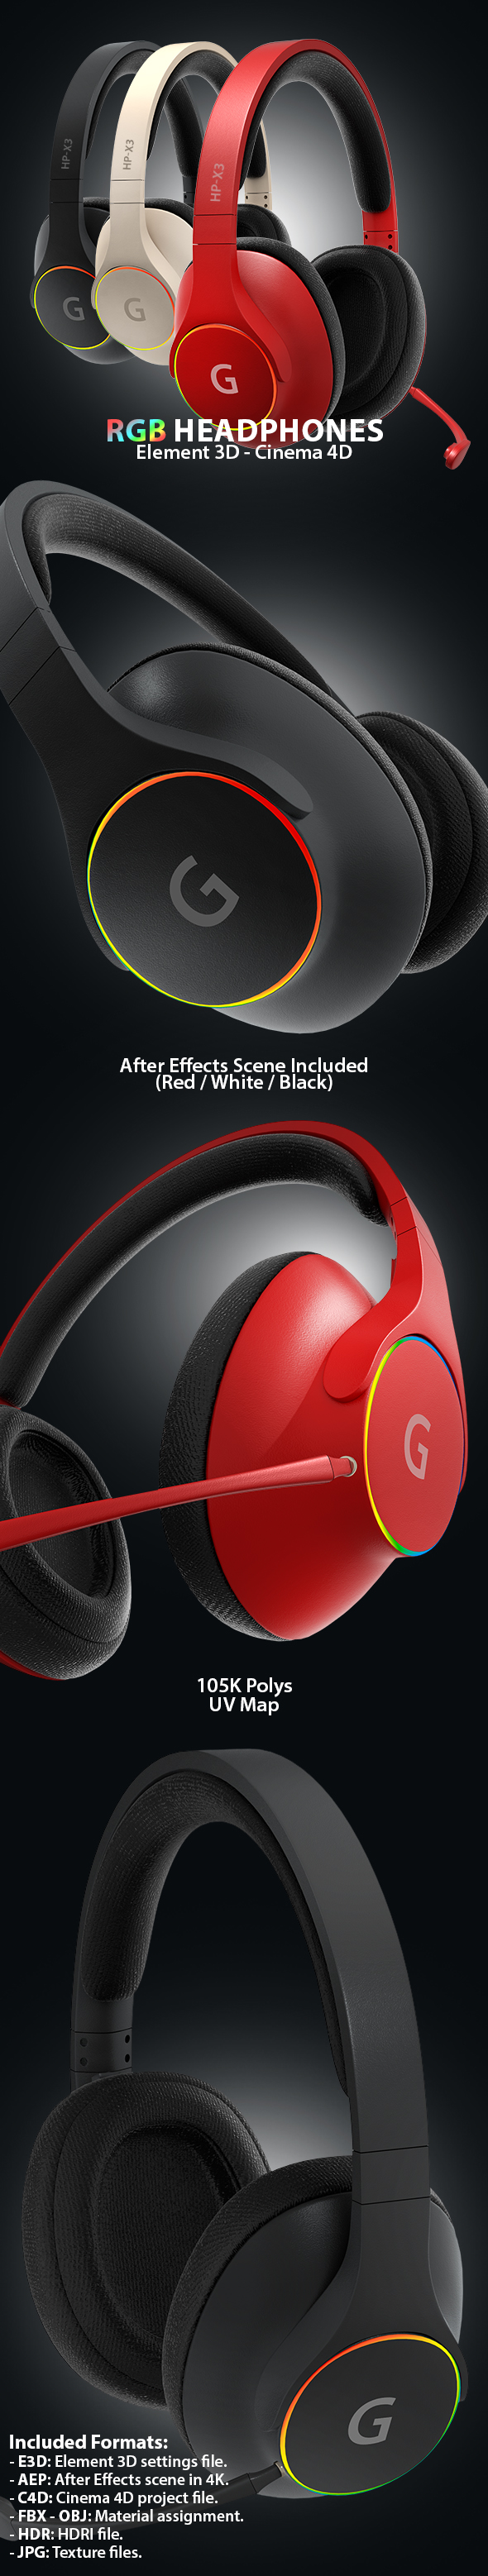 RGB Headphones 3D - 3Docean 31268019